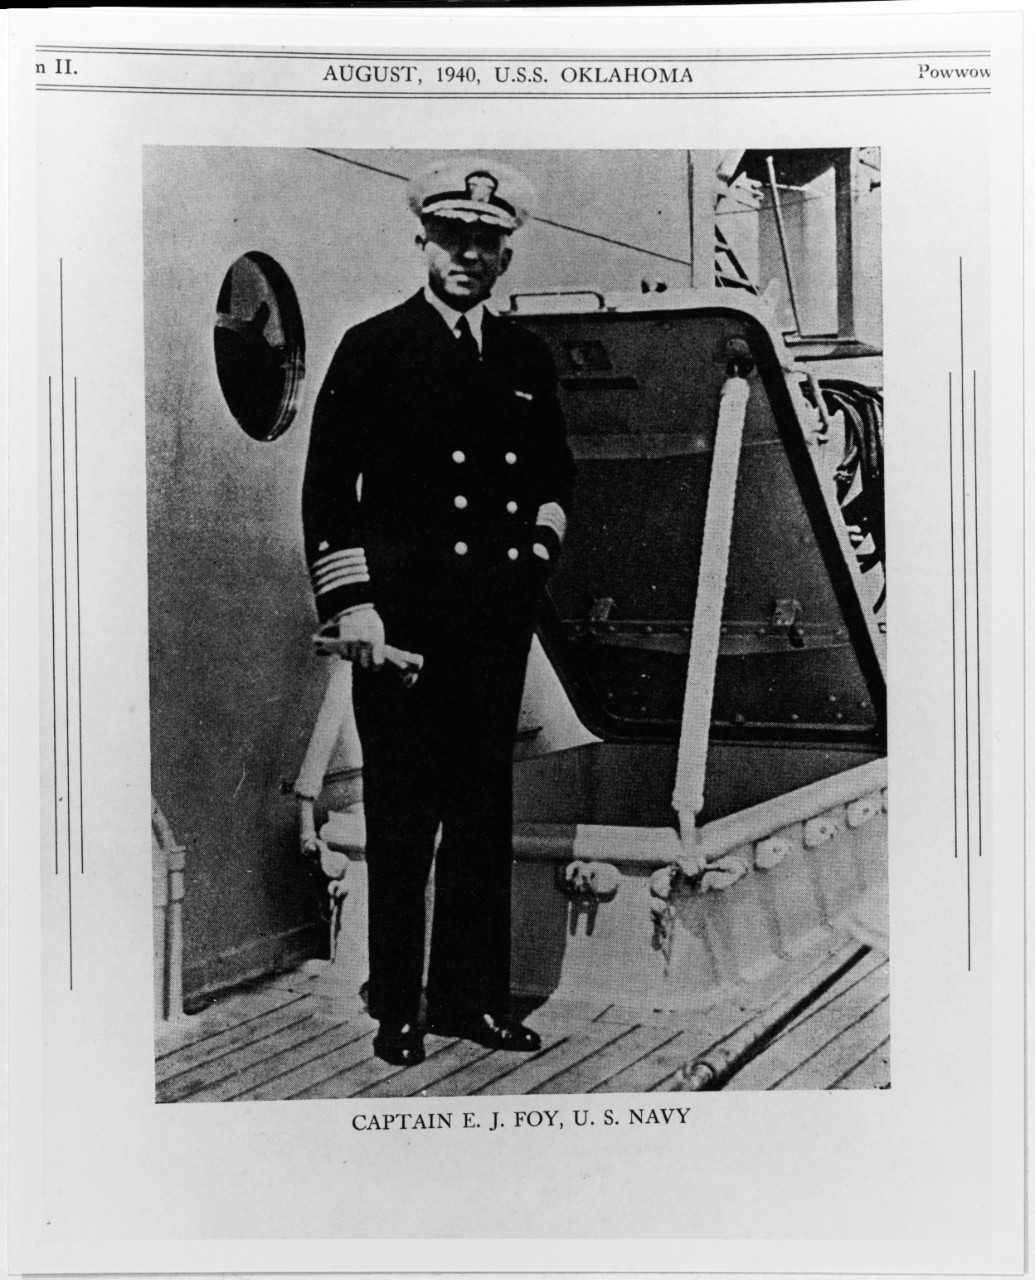 Captain E.J. Foy, USN